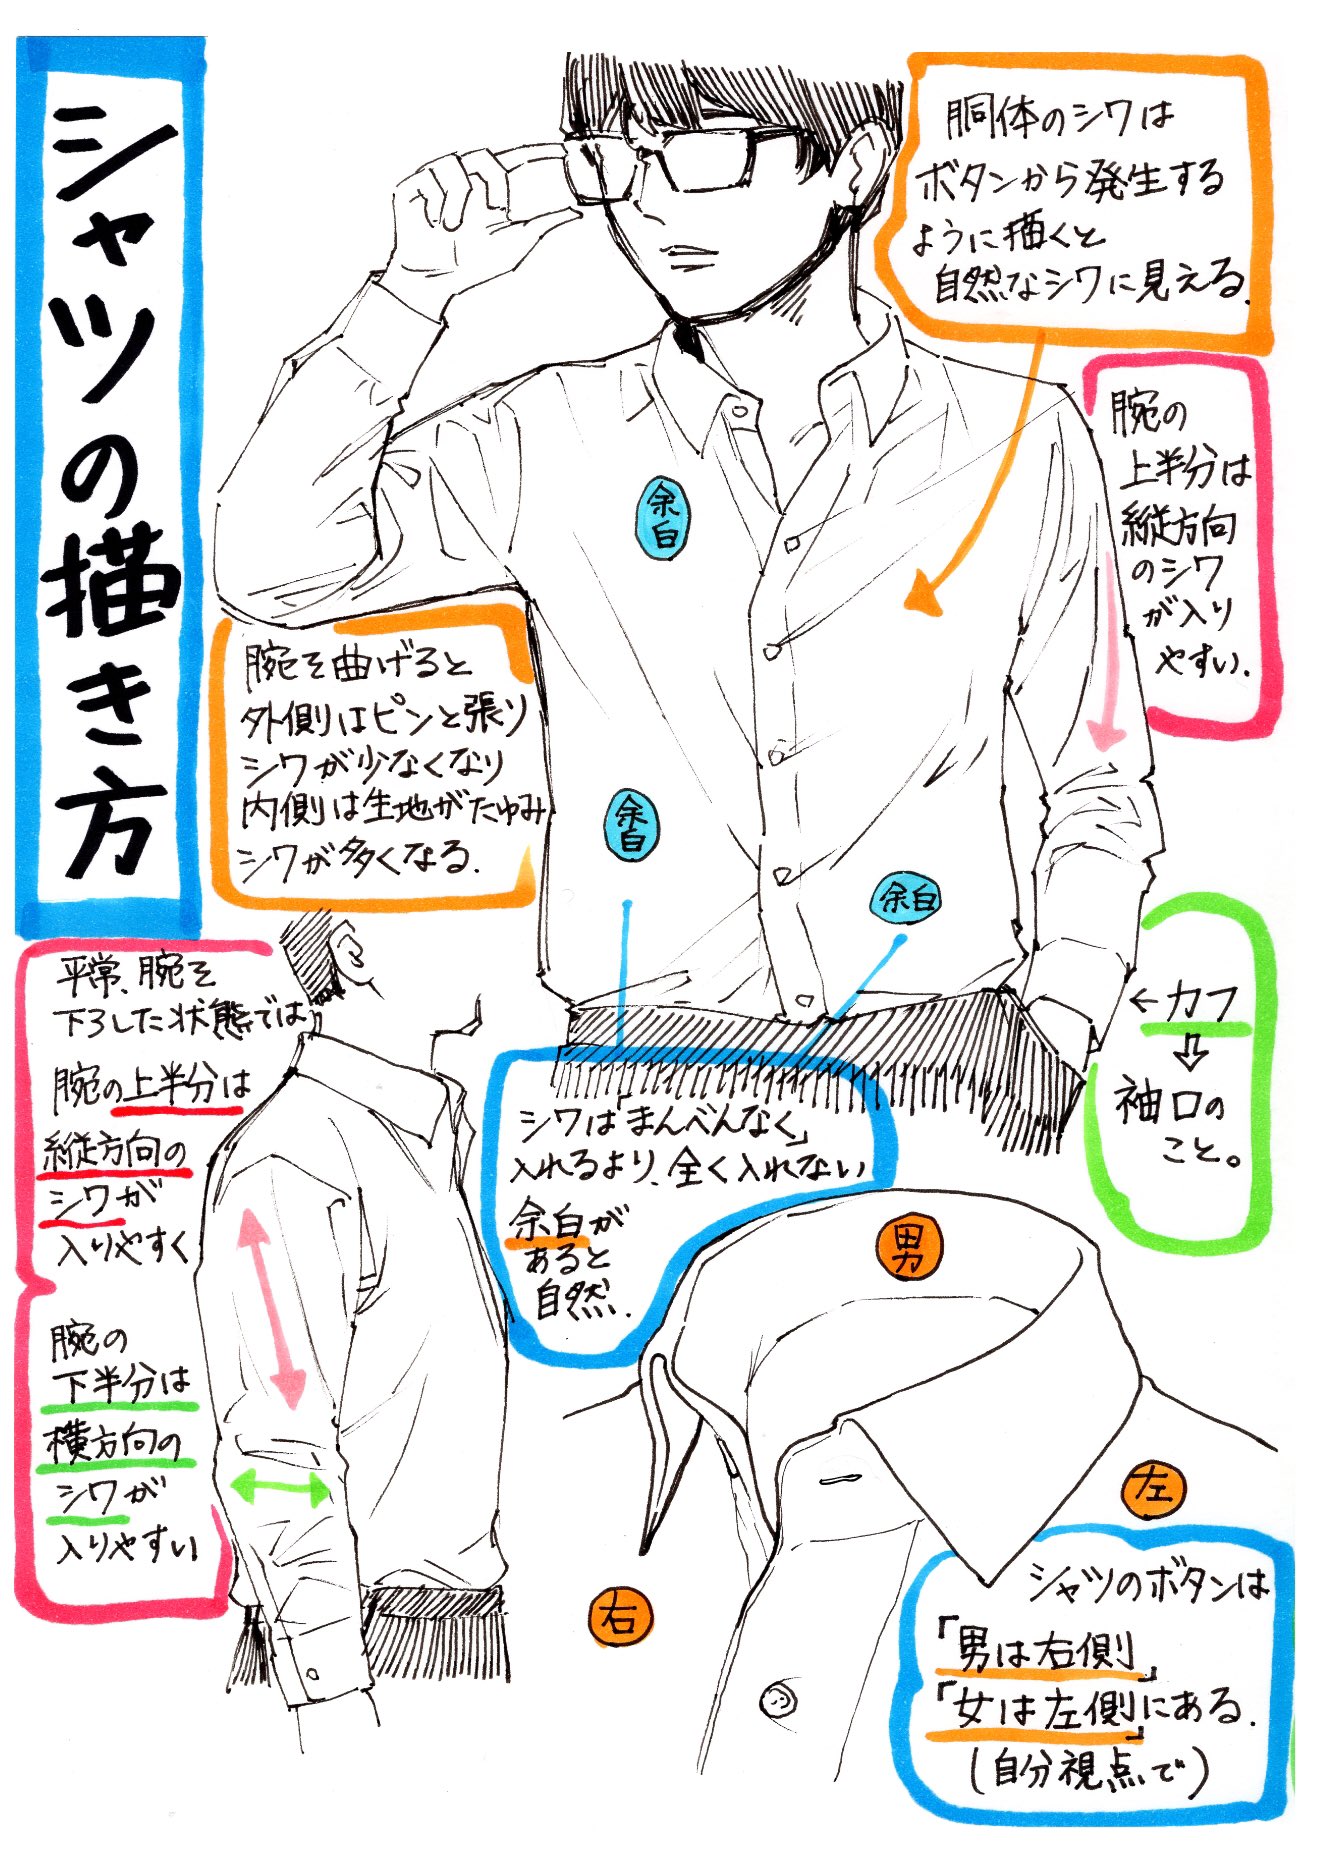 Twitter 吉村拓也 イラスト講座 على تويتر シャツの描き方 腕まくりやシャツしわ が上達する シャツ服の3ページ講座 です T Co Uvcuyfc4ra